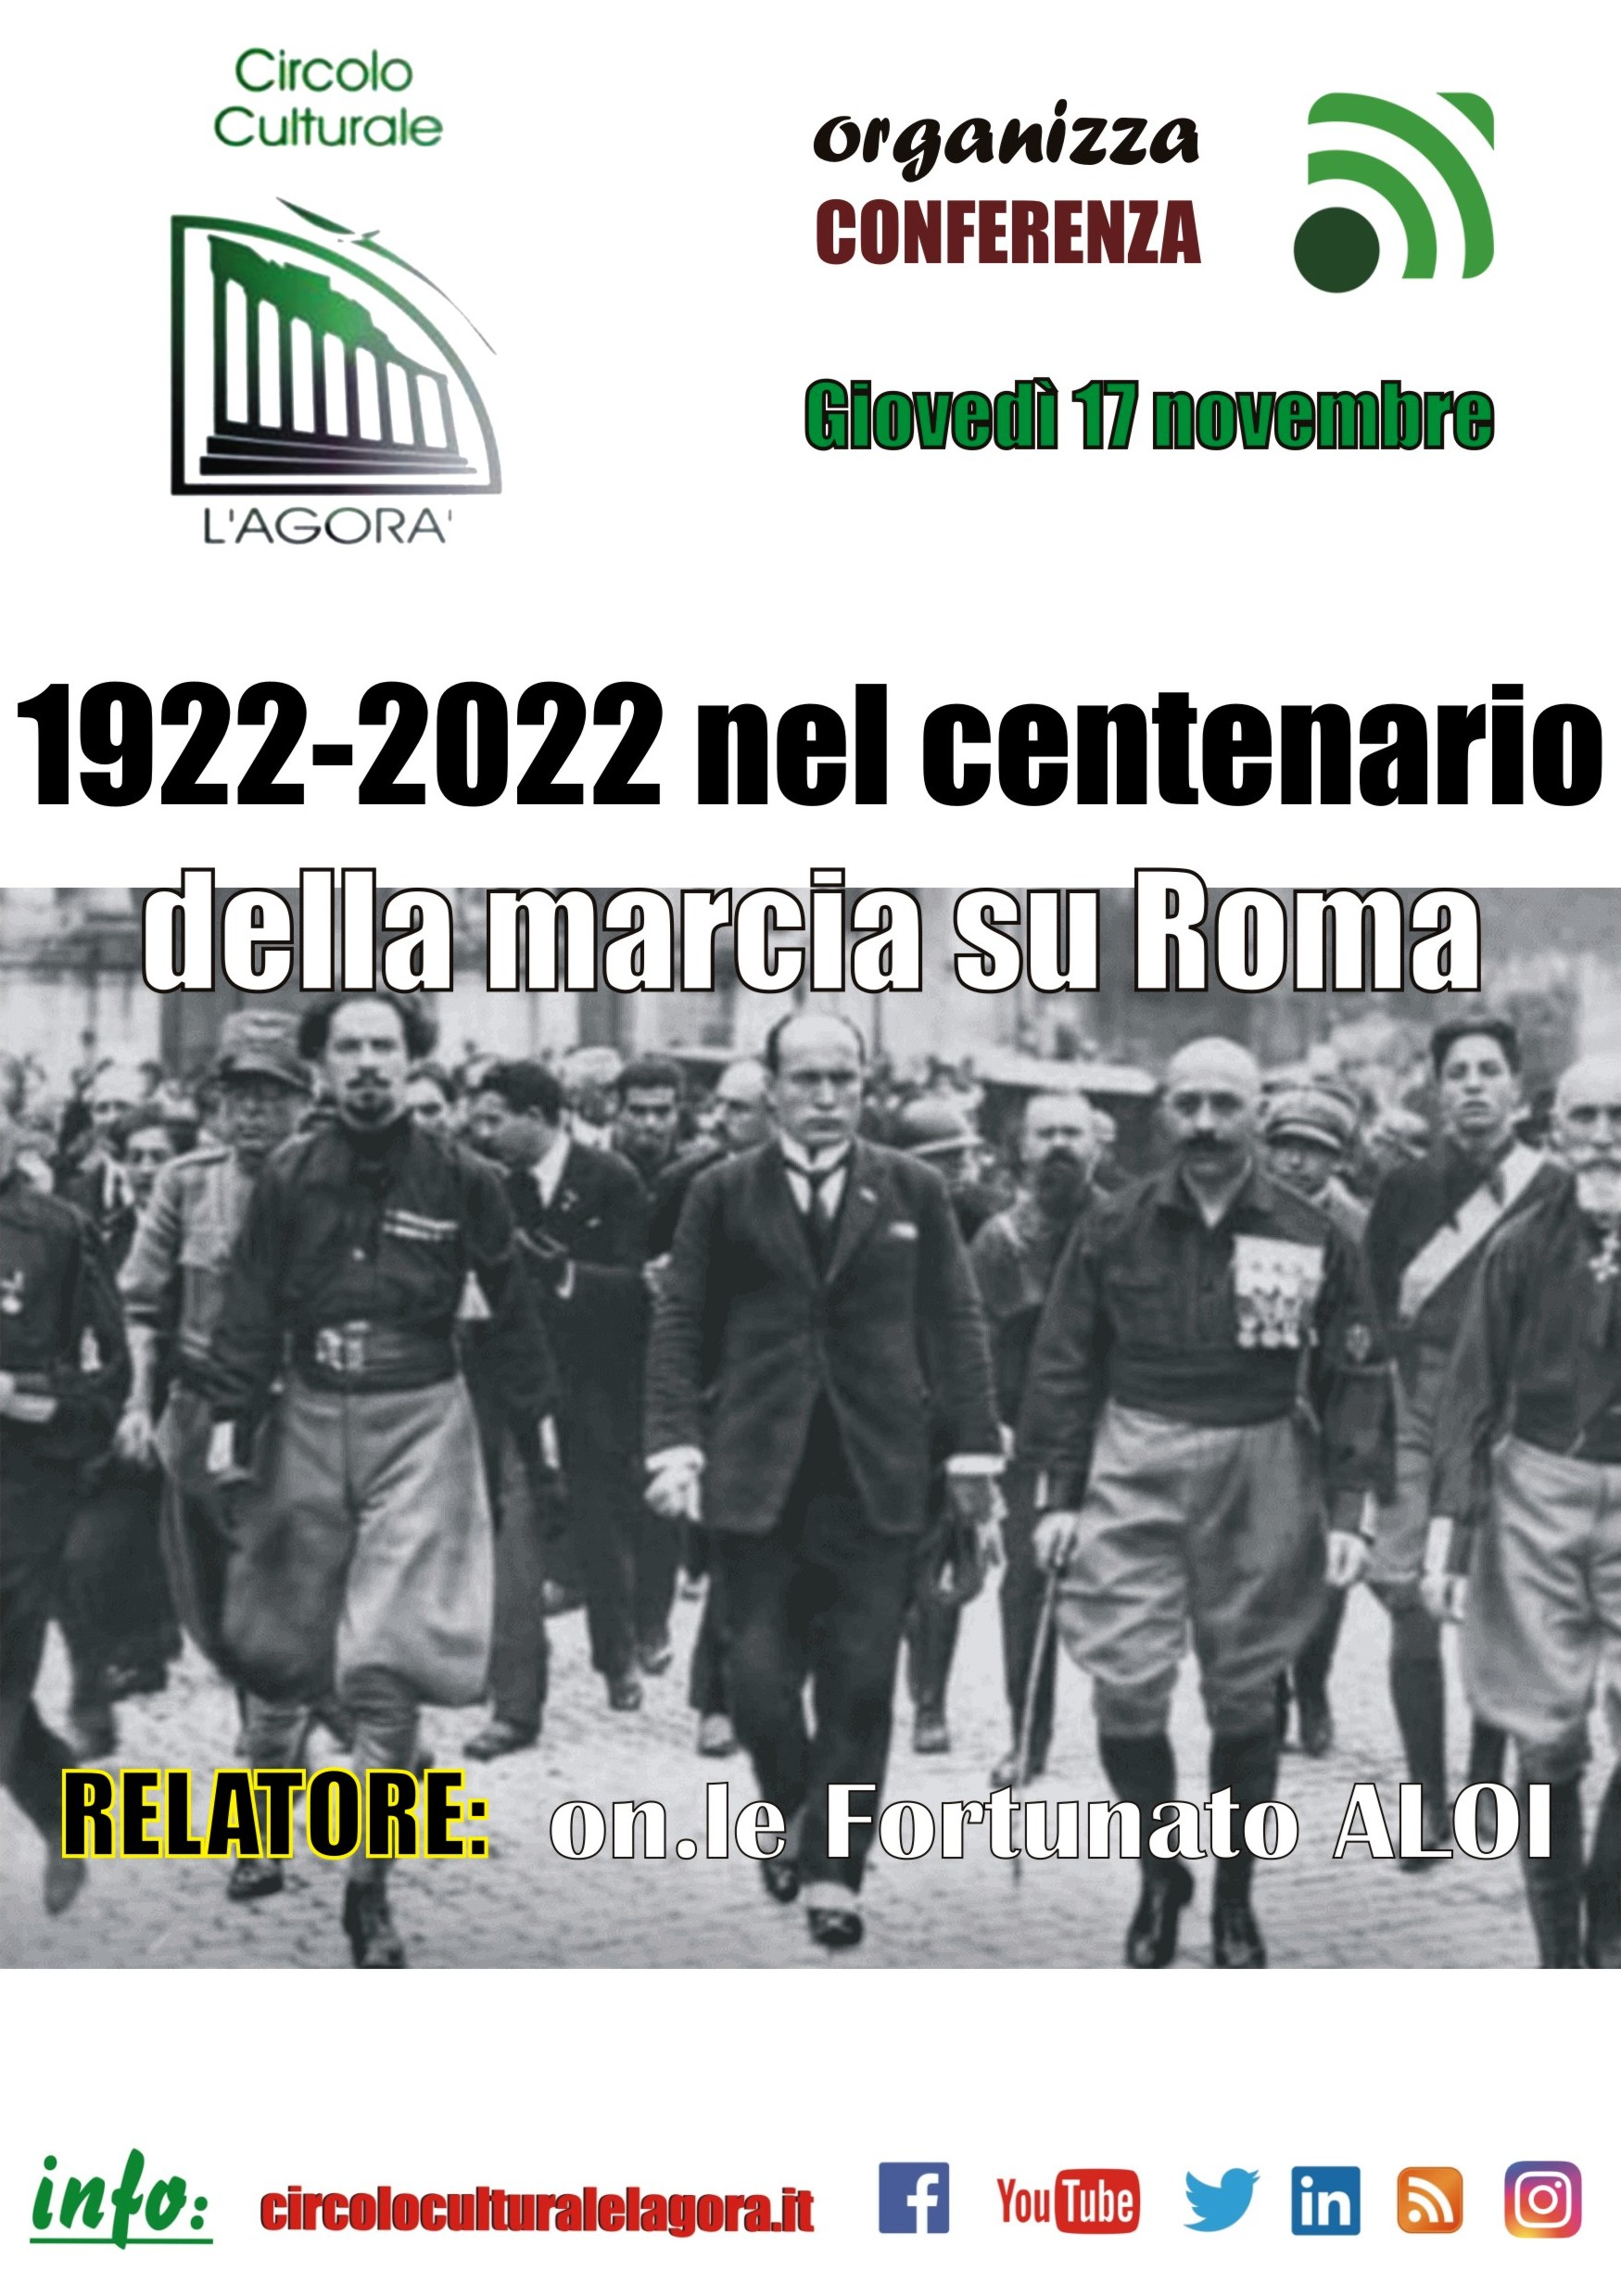 Foto 1 - L’Agorà ed il centenario della marcia su Roma.